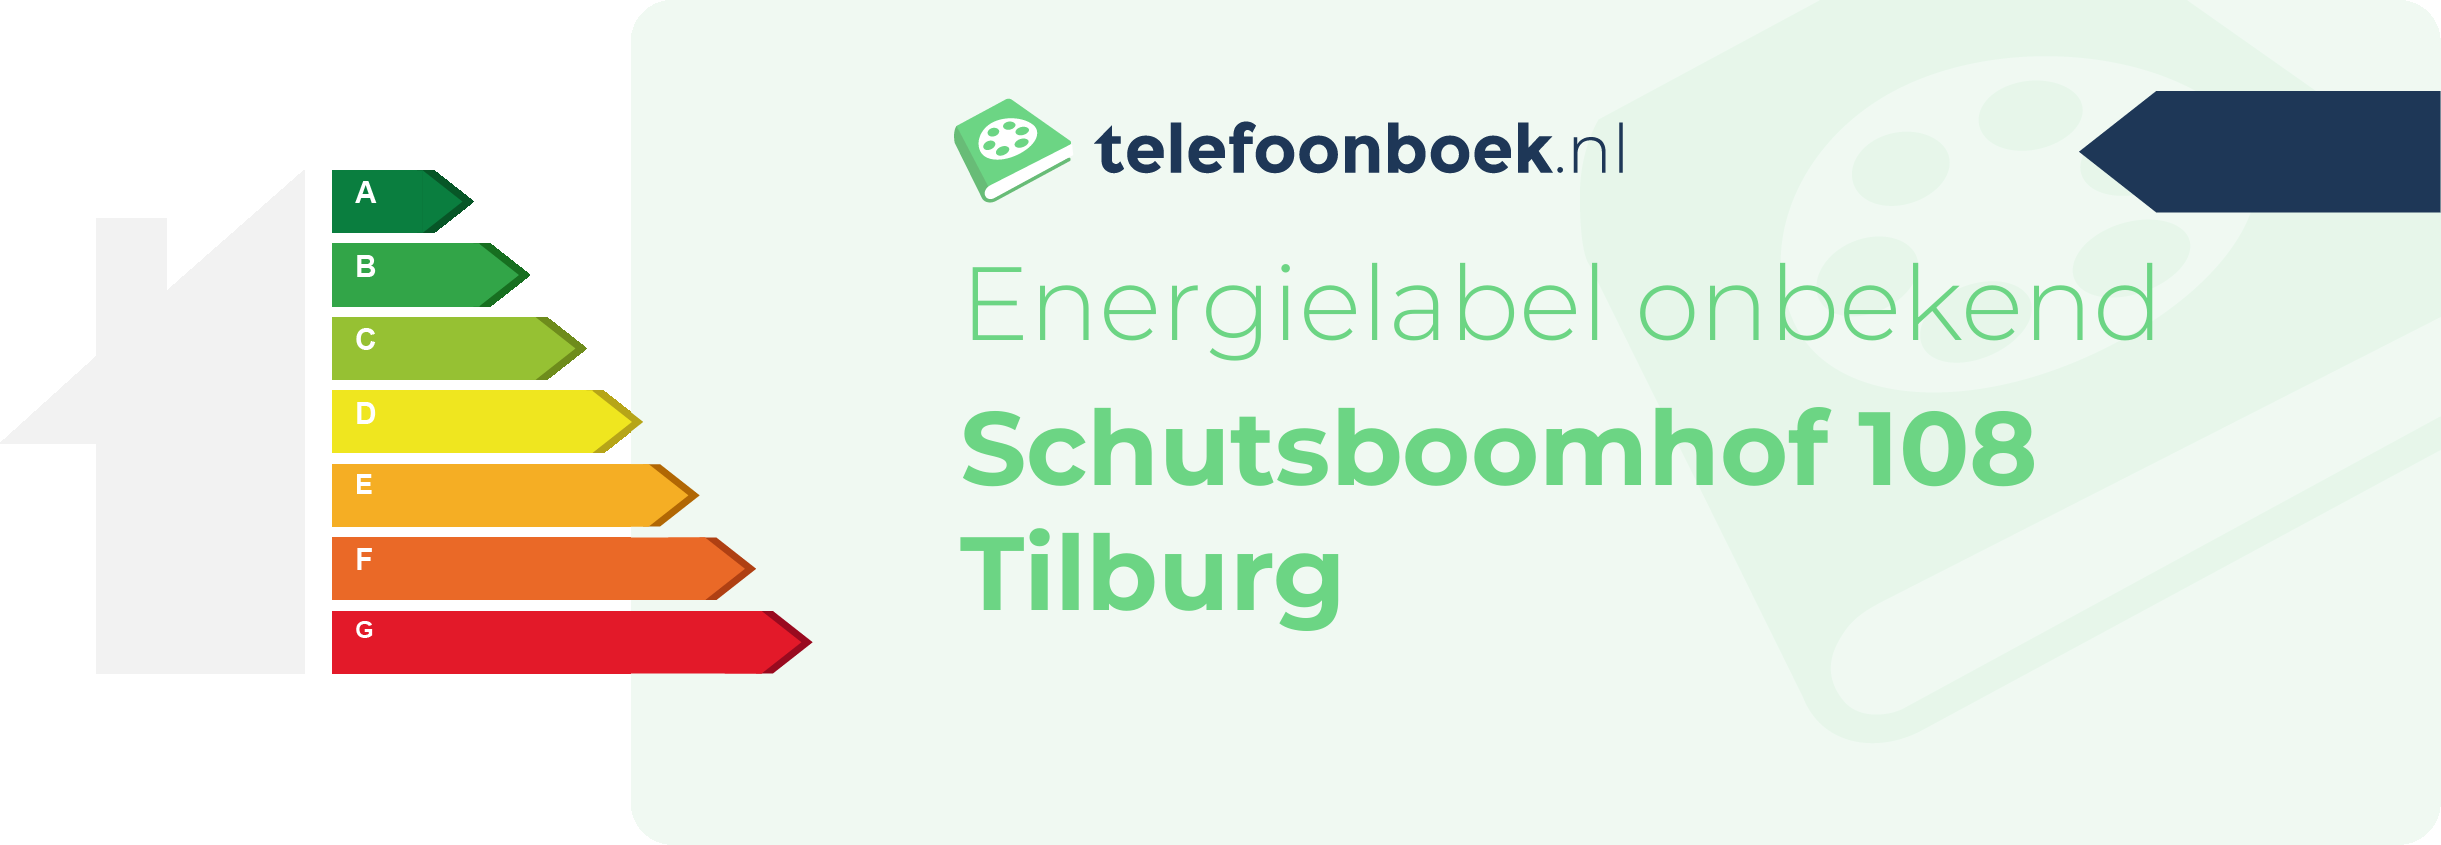 Energielabel Schutsboomhof 108 Tilburg